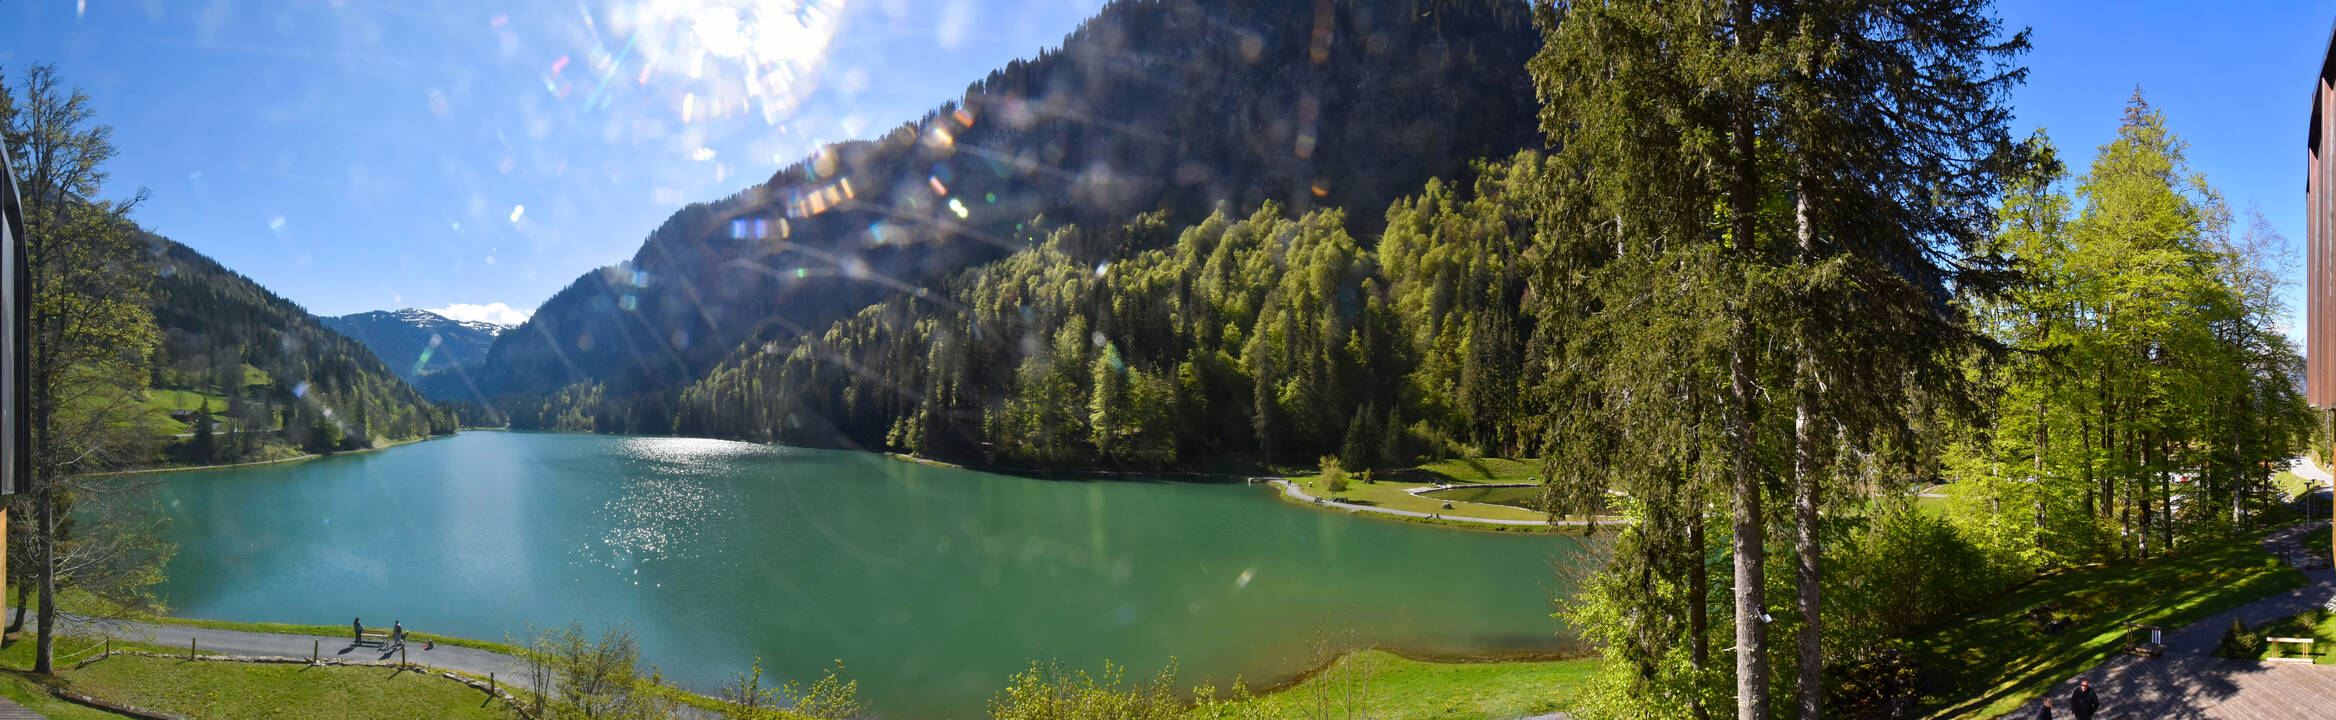 Webcam - Lac de Montriond - Vallée d'Aulps